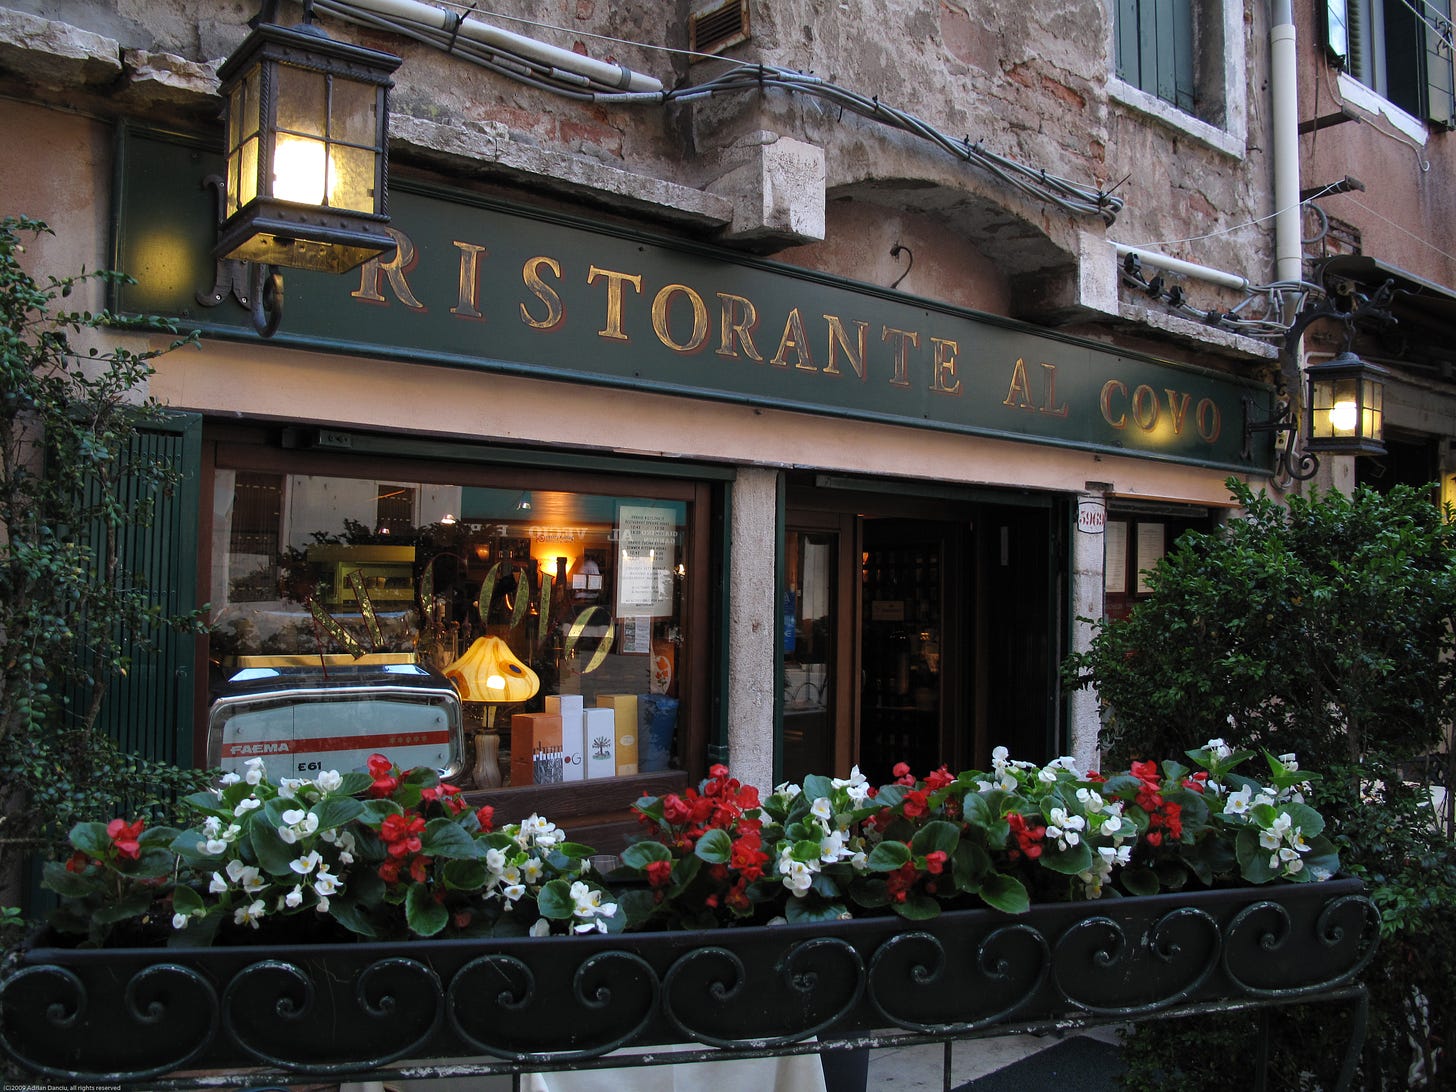 Al Covo ristorante in Venice Italy.